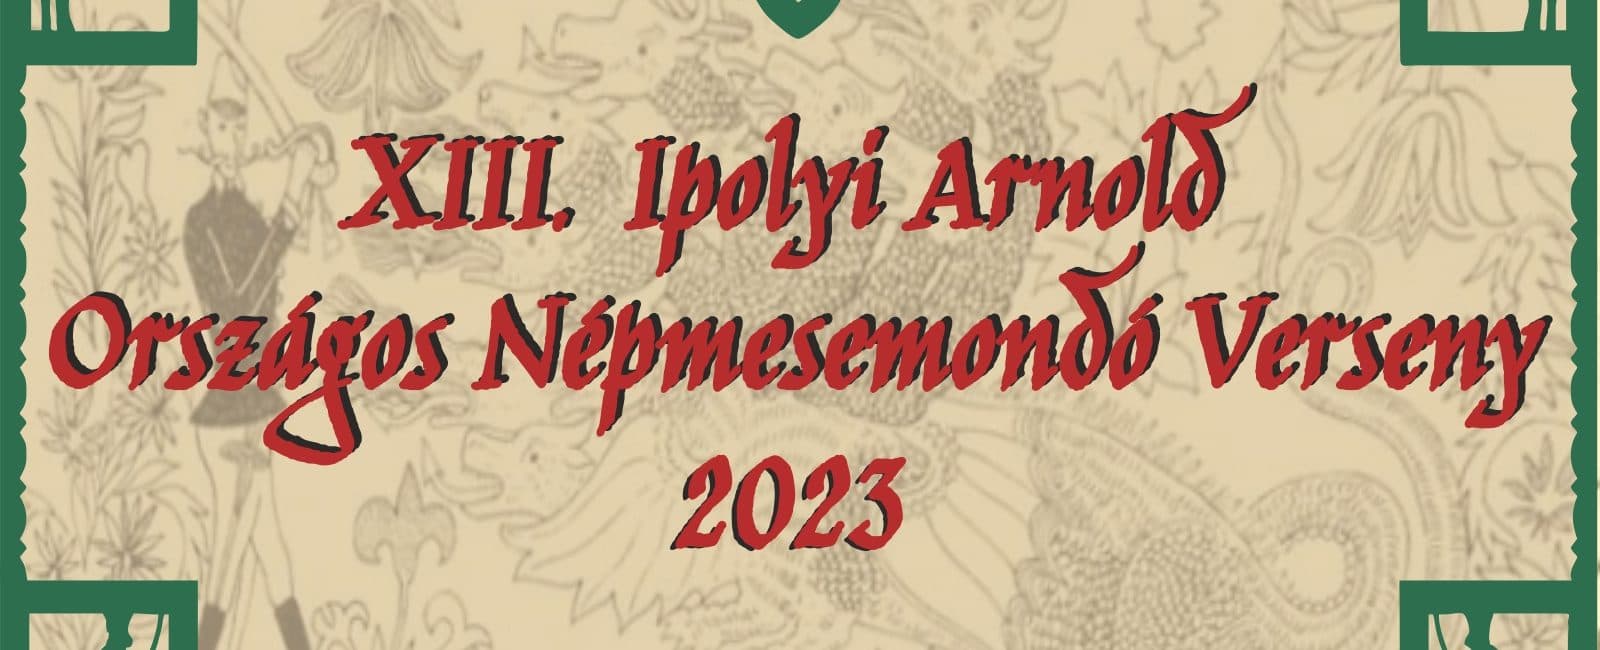 Március végéig lehet jelentkezni a XIII. Ipolyi Arnold Népmesemondó Versenyre